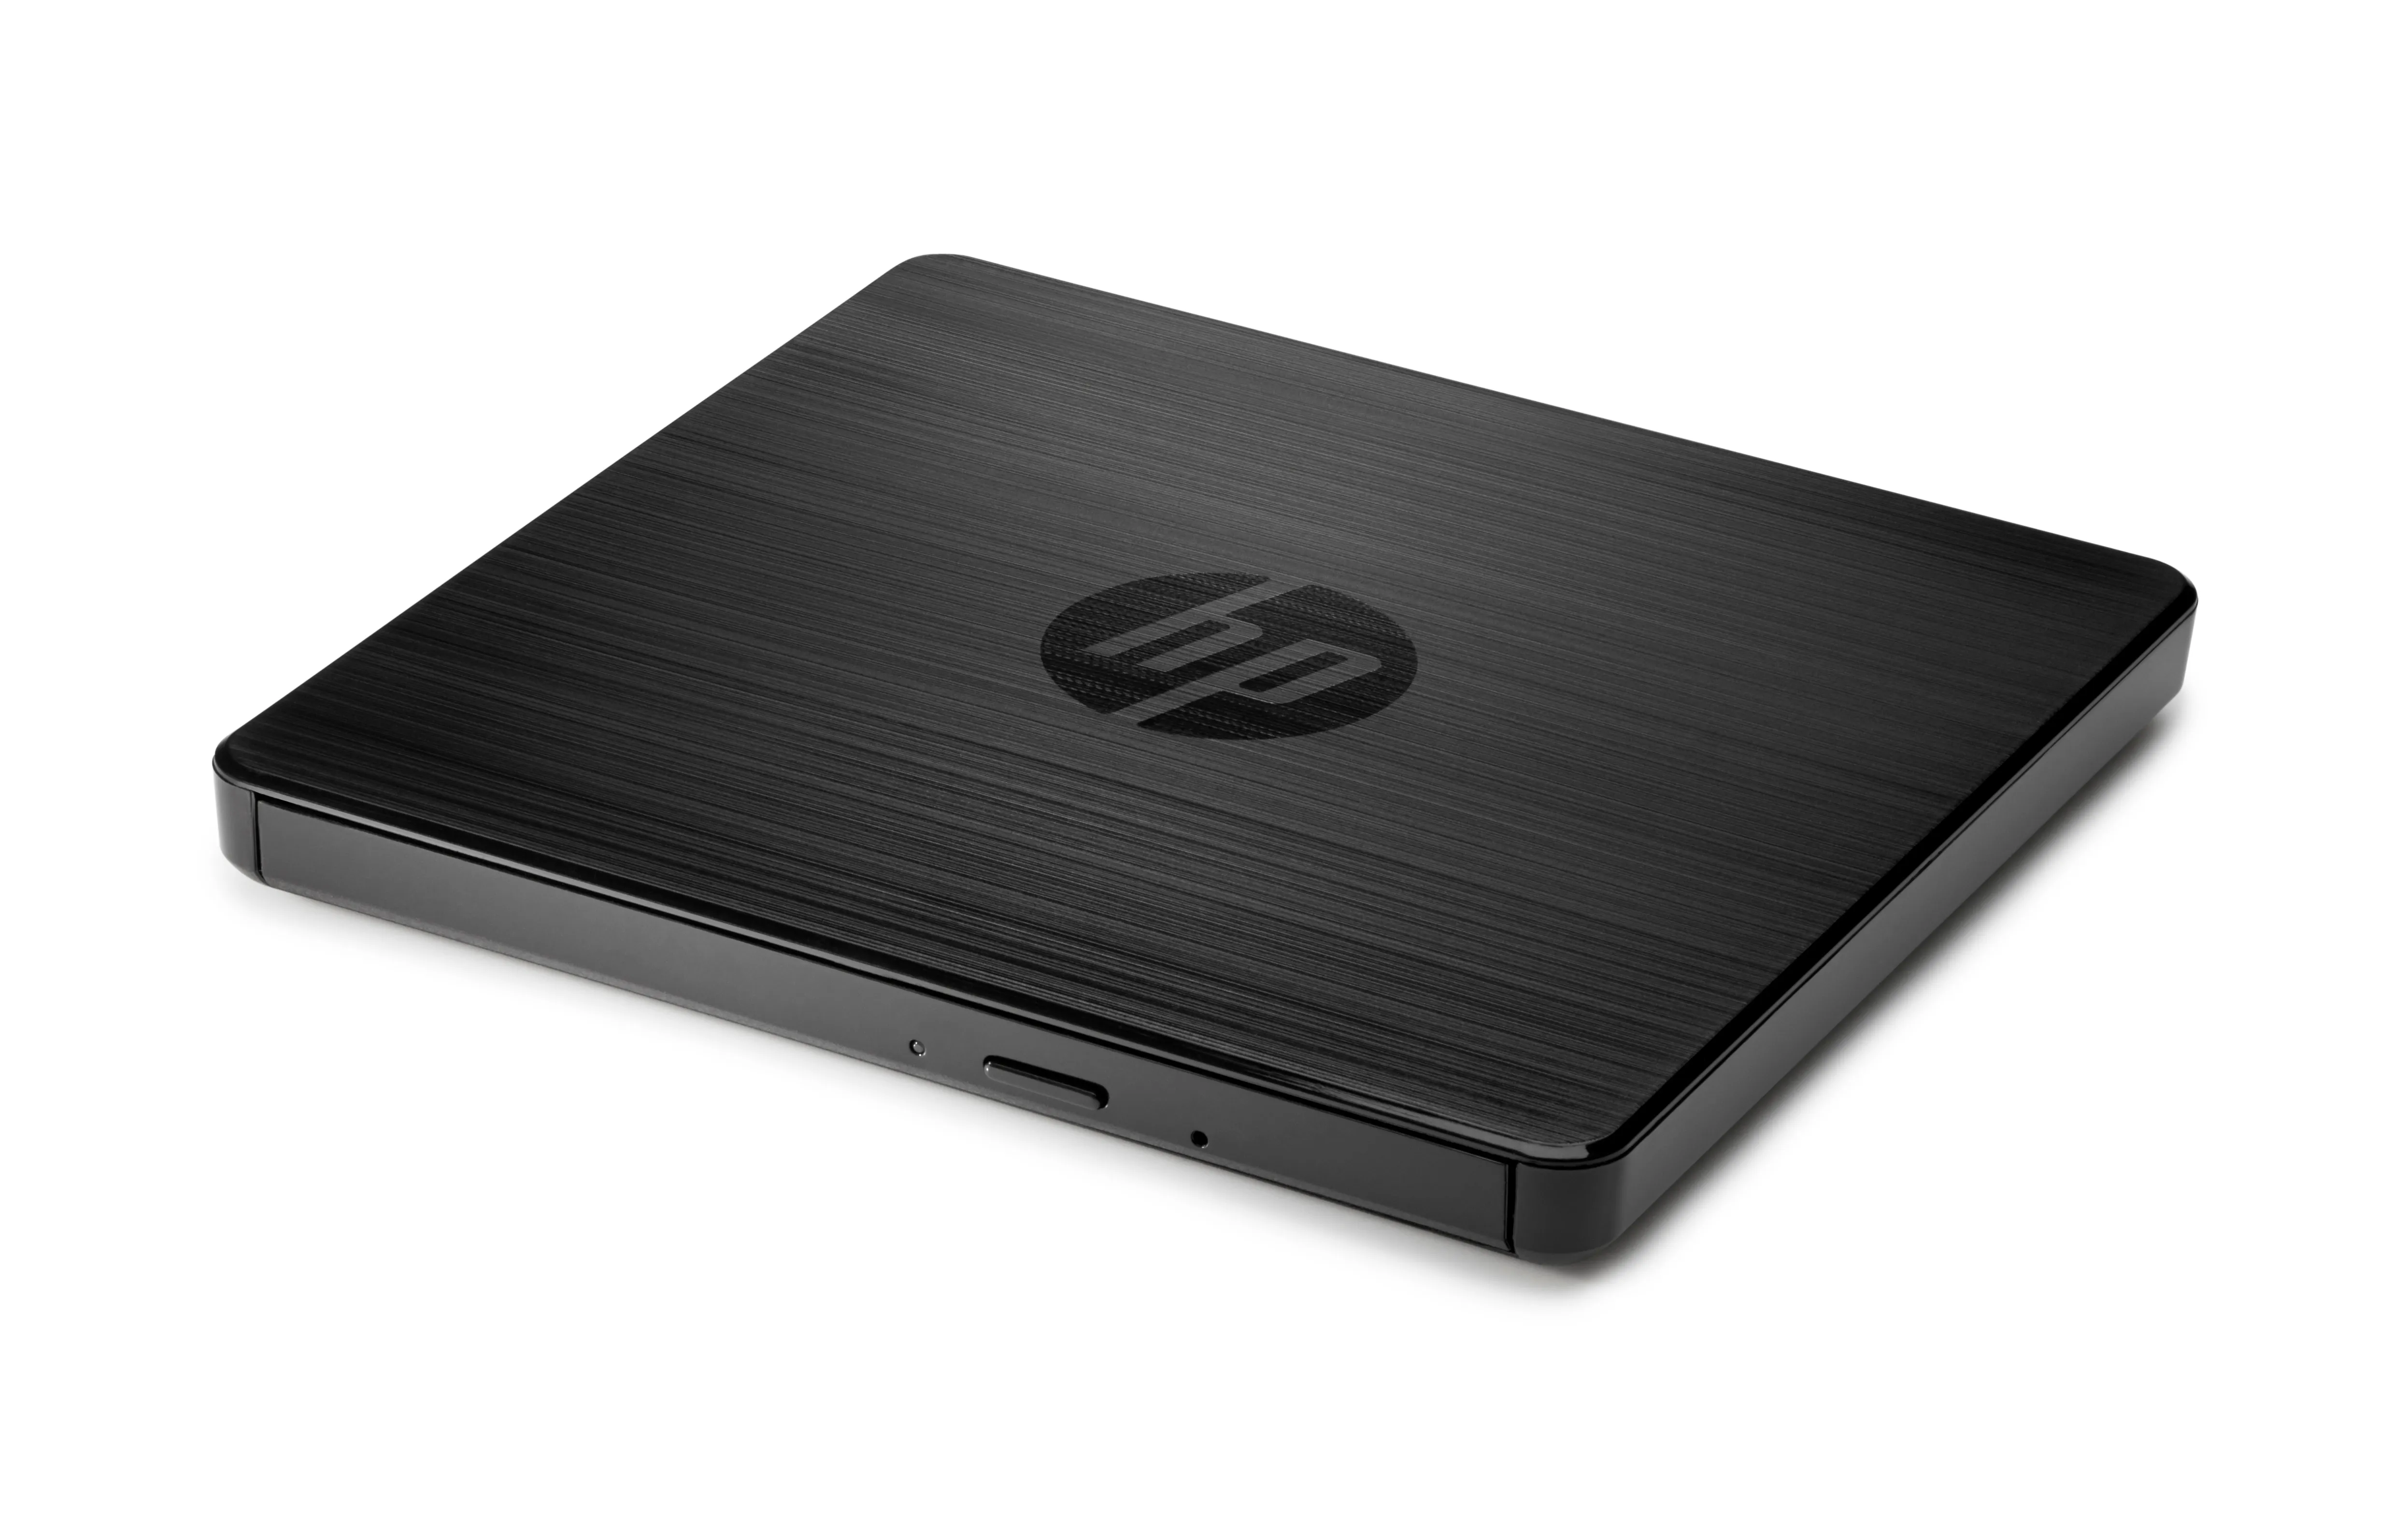 Vente HP USB External DVDRW Drive PROJEKT Retail HP au meilleur prix - visuel 2